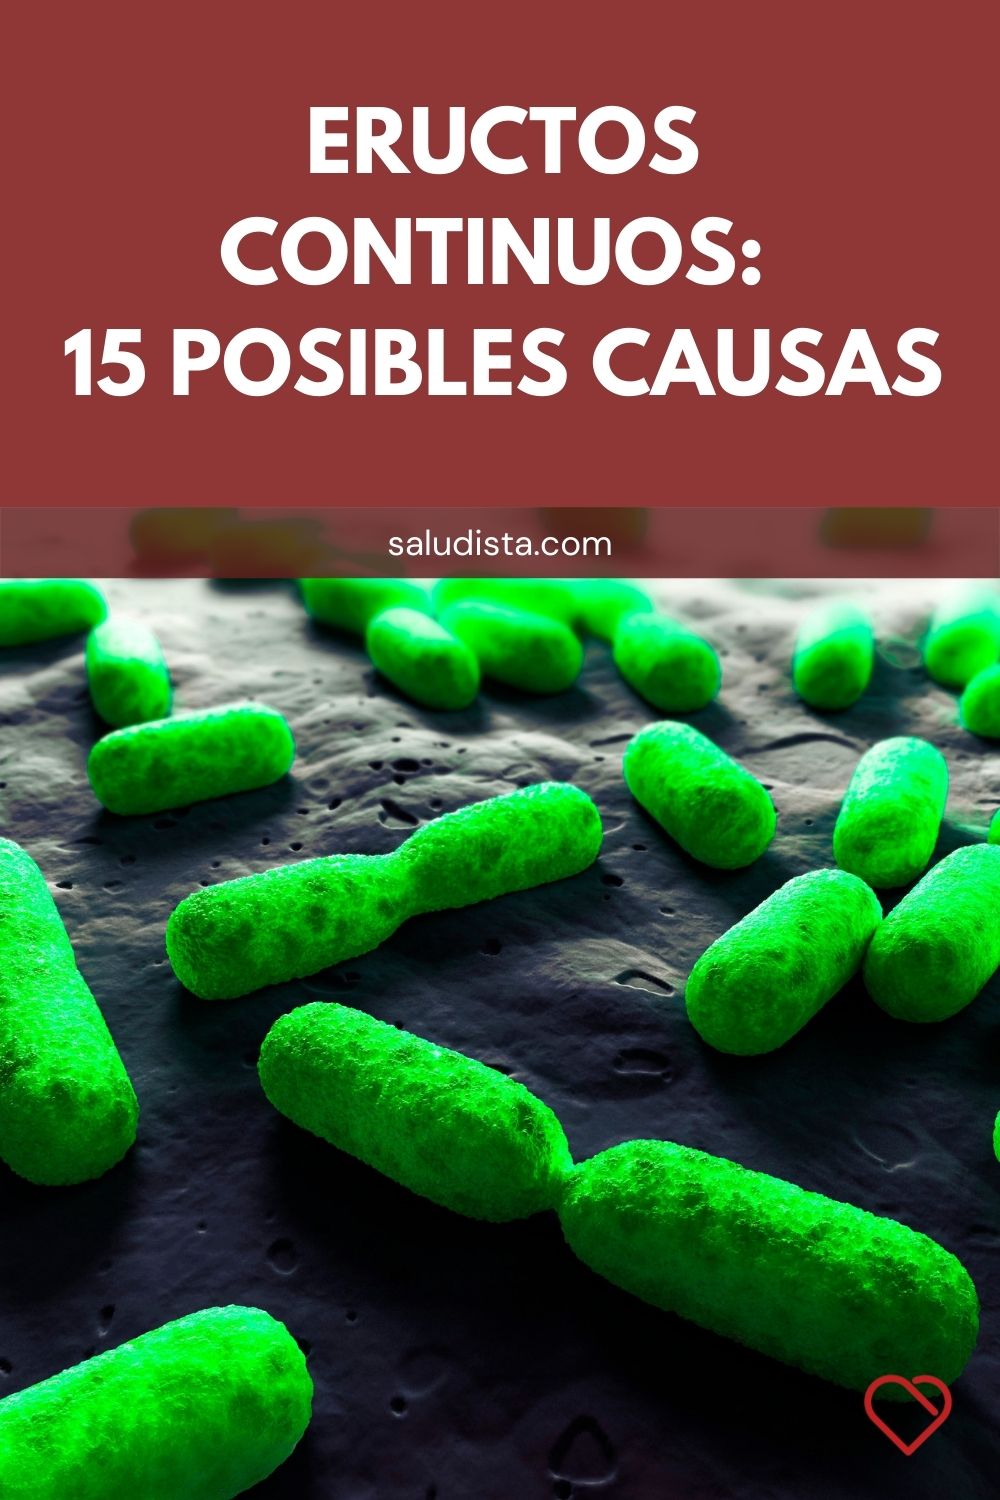 Eructos continuos: 15 posibles causas